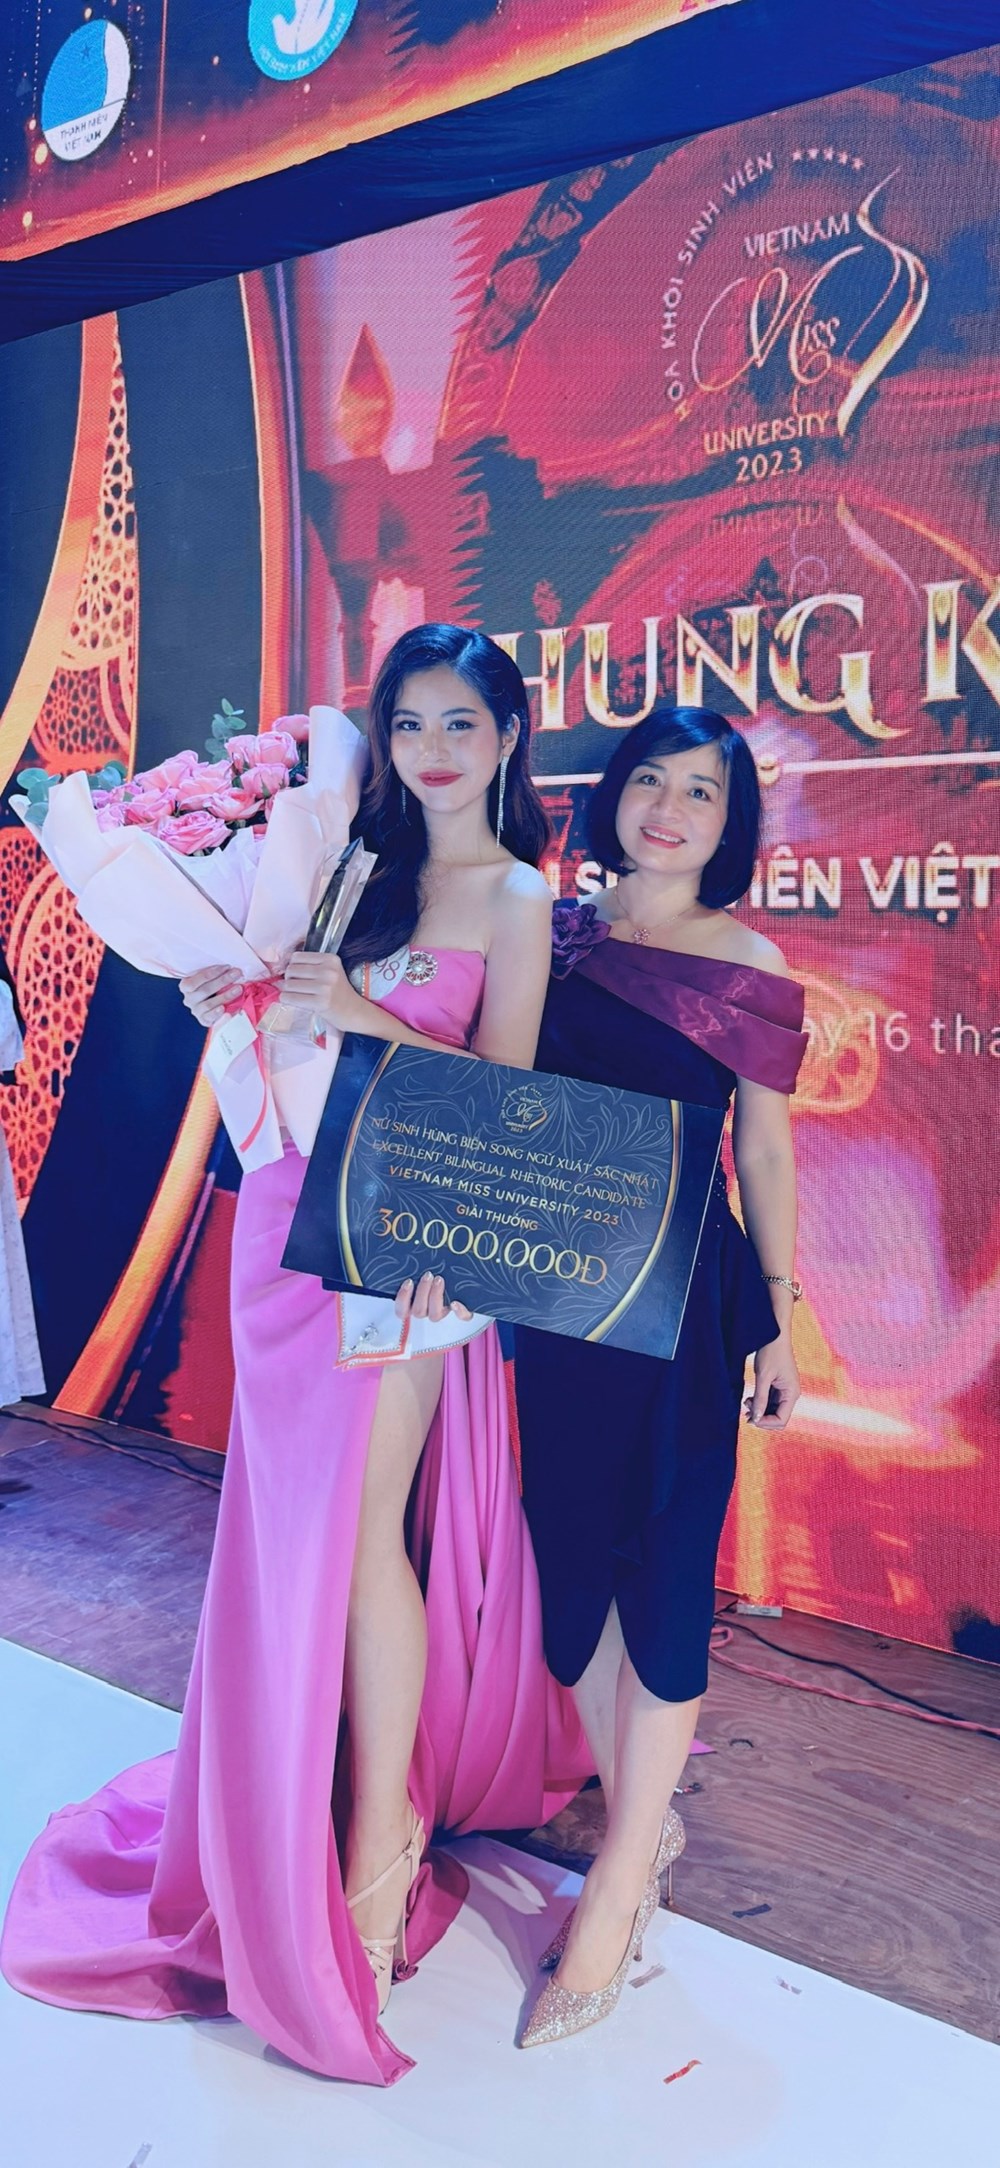 “Nữ sinh hùng biện song ngữ xuất sắc nhất” cuộc thi Hoa khôi Sinh viên Việt Nam 2023 - ảnh 3